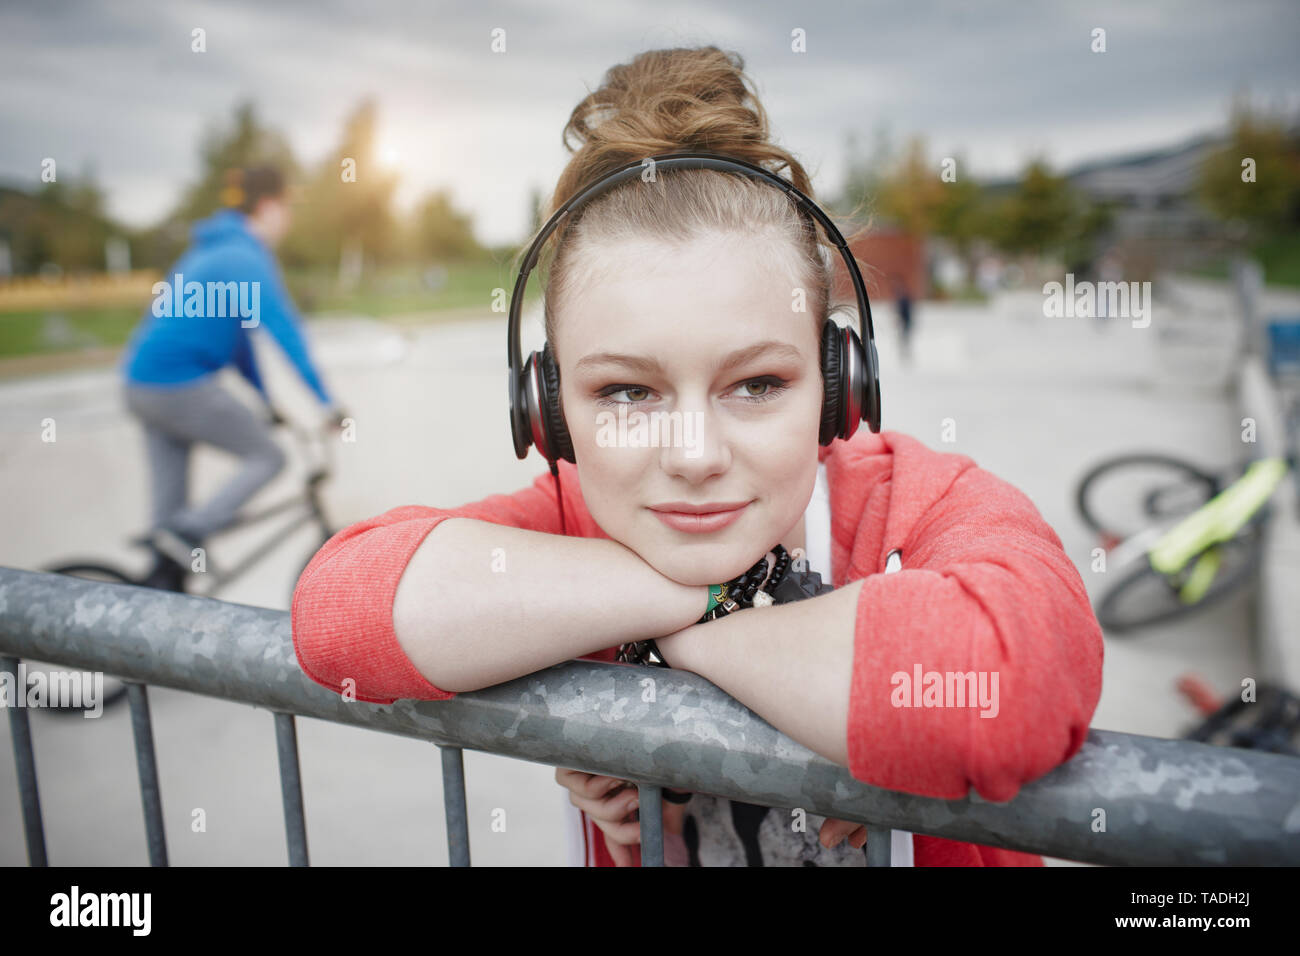 Retrato de una adolescente que lleva puestos los auriculares en un skatepark Foto de stock